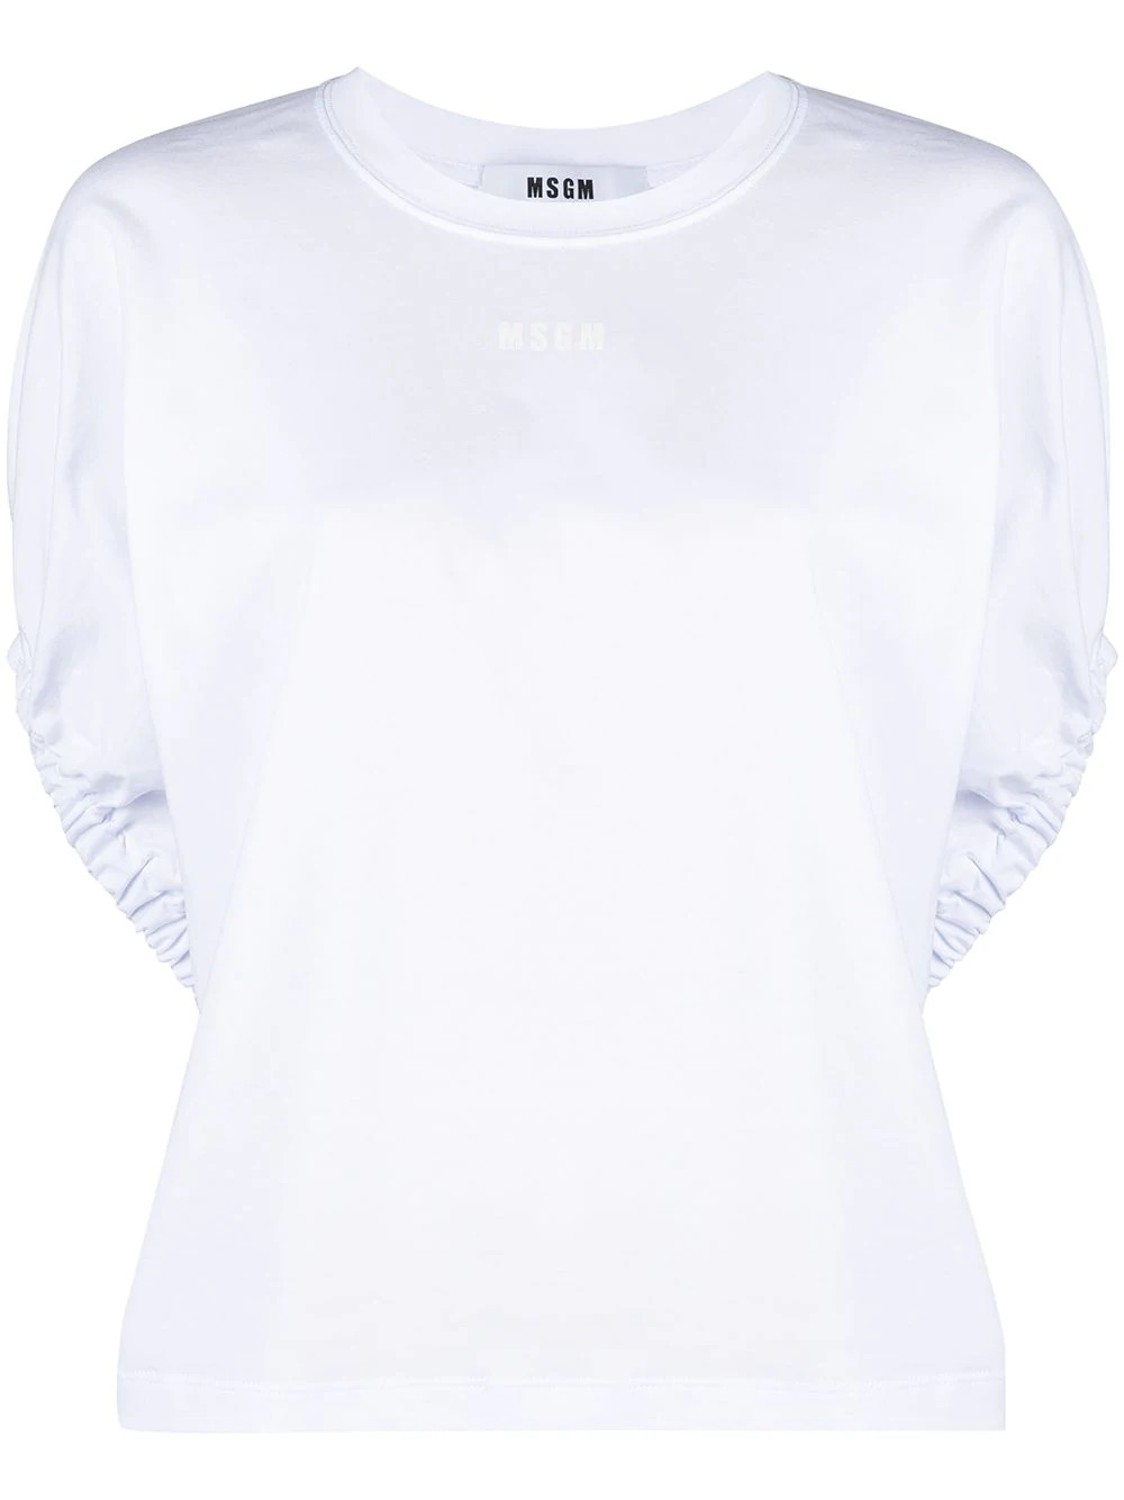 shop MSGM Saldi T-shirts: T-shirts MSGM, girocollo, oversize, maniche corte, a pipistrello, arricciate.

Composizione: 100% cotone. number 2097